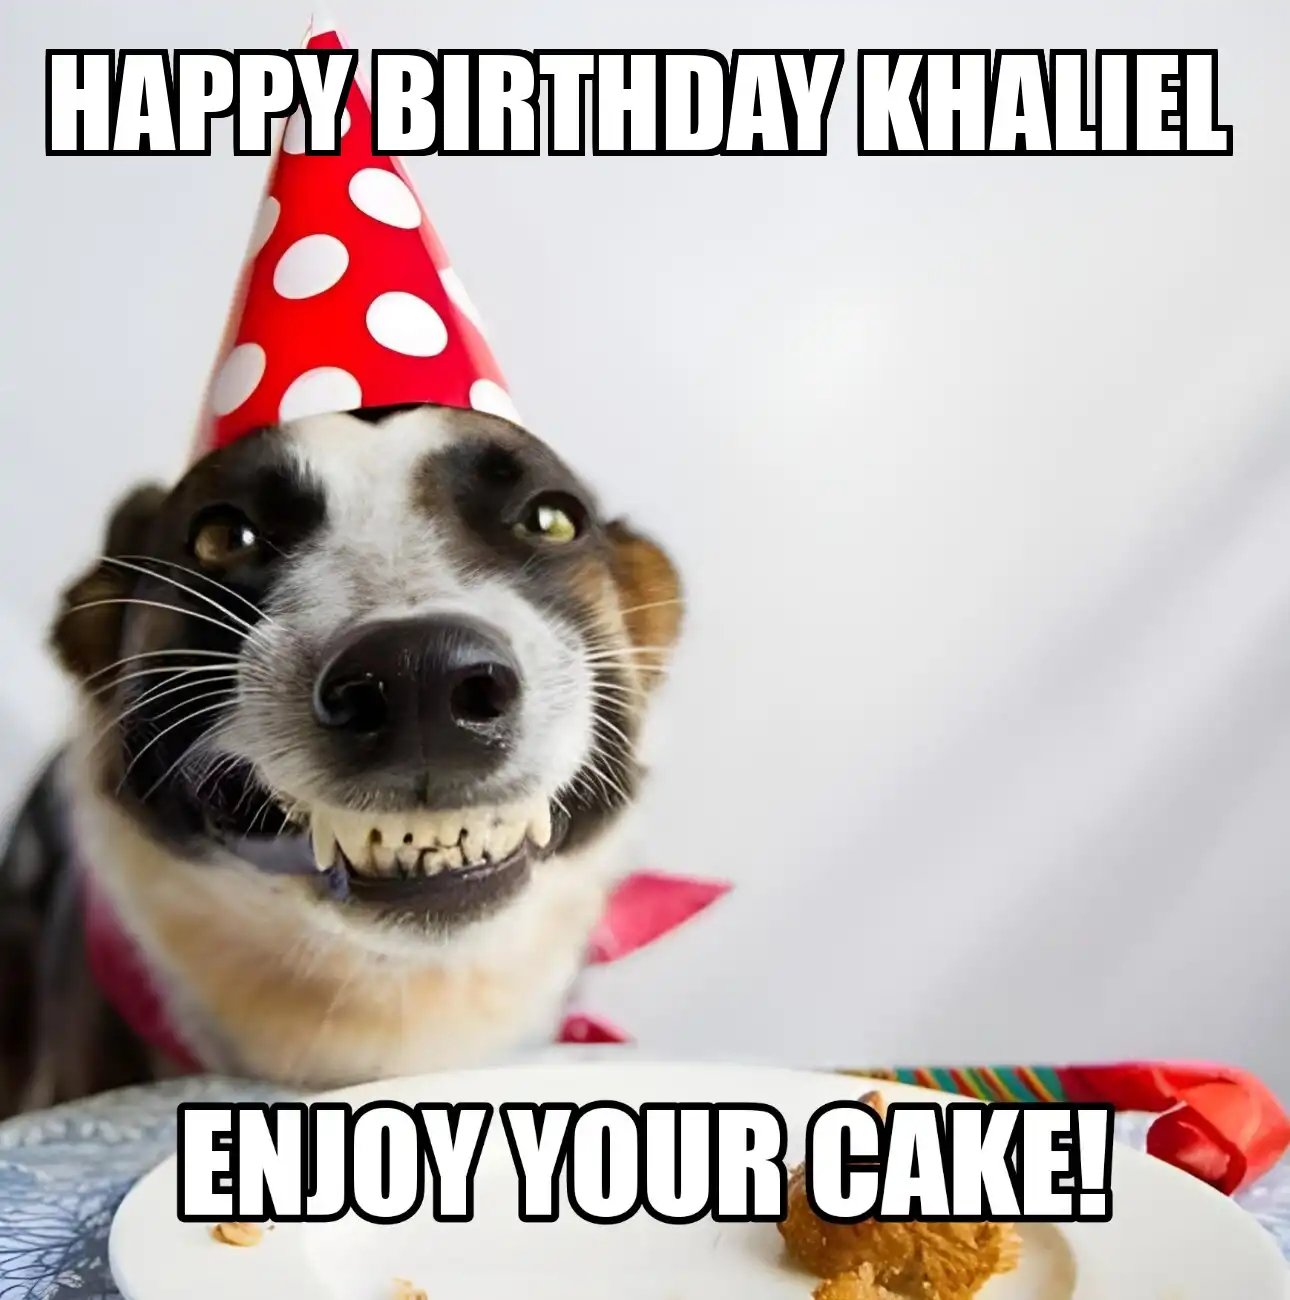 Happy Birthday Khaliel Enjoy Your Cake Dog Meme